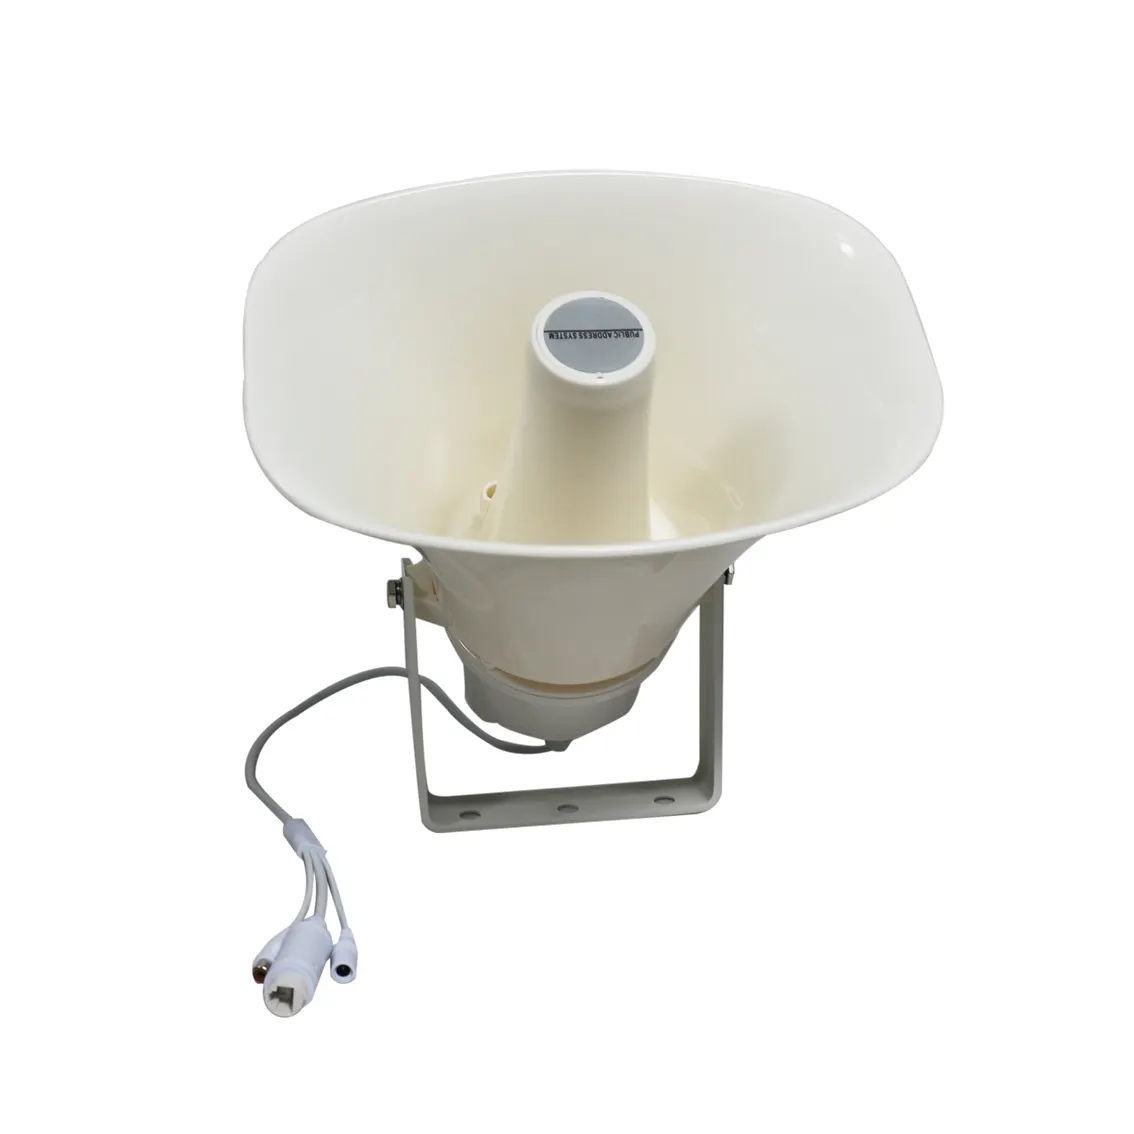 T Outdoor Waterdichte Kwaliteit Ip66 Hoorn 15W Cctv Hoorn Speaker Met DC12-24v Voeding Actieve Hoorn Speaker